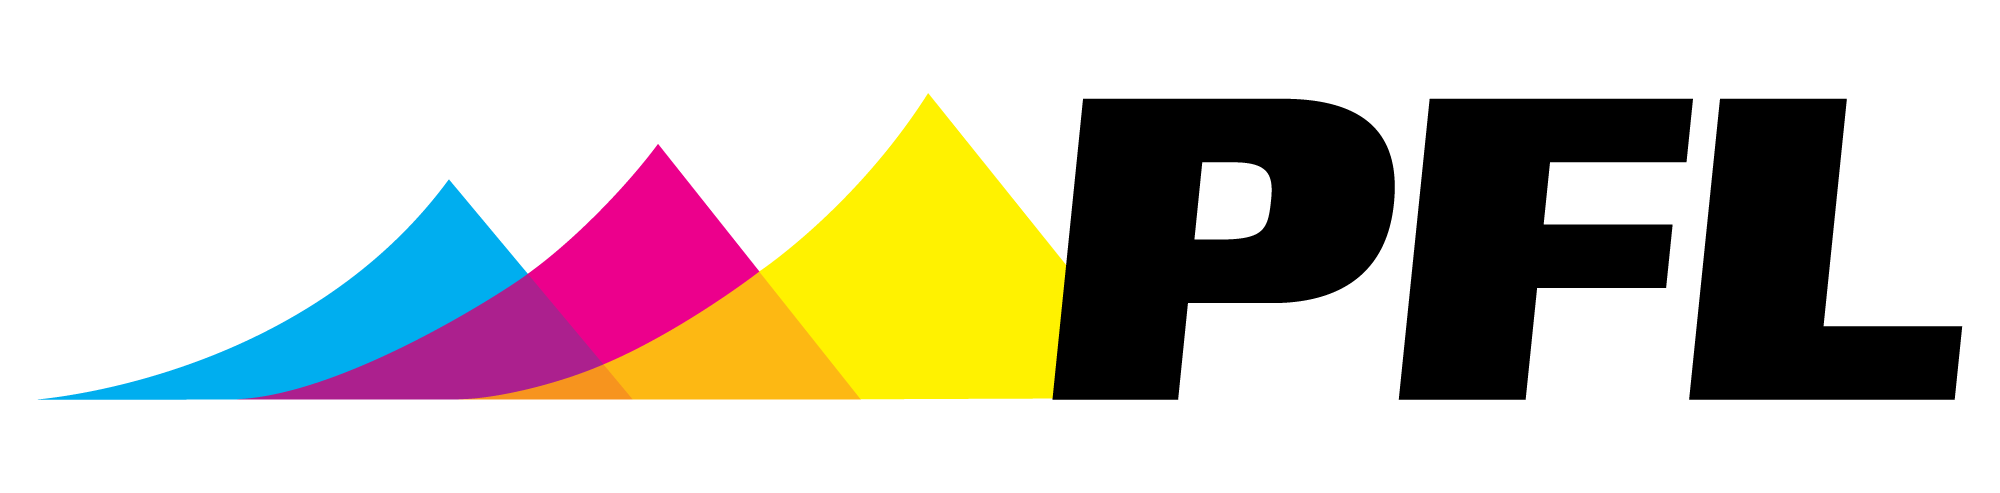 PFL_Logo_4color.png